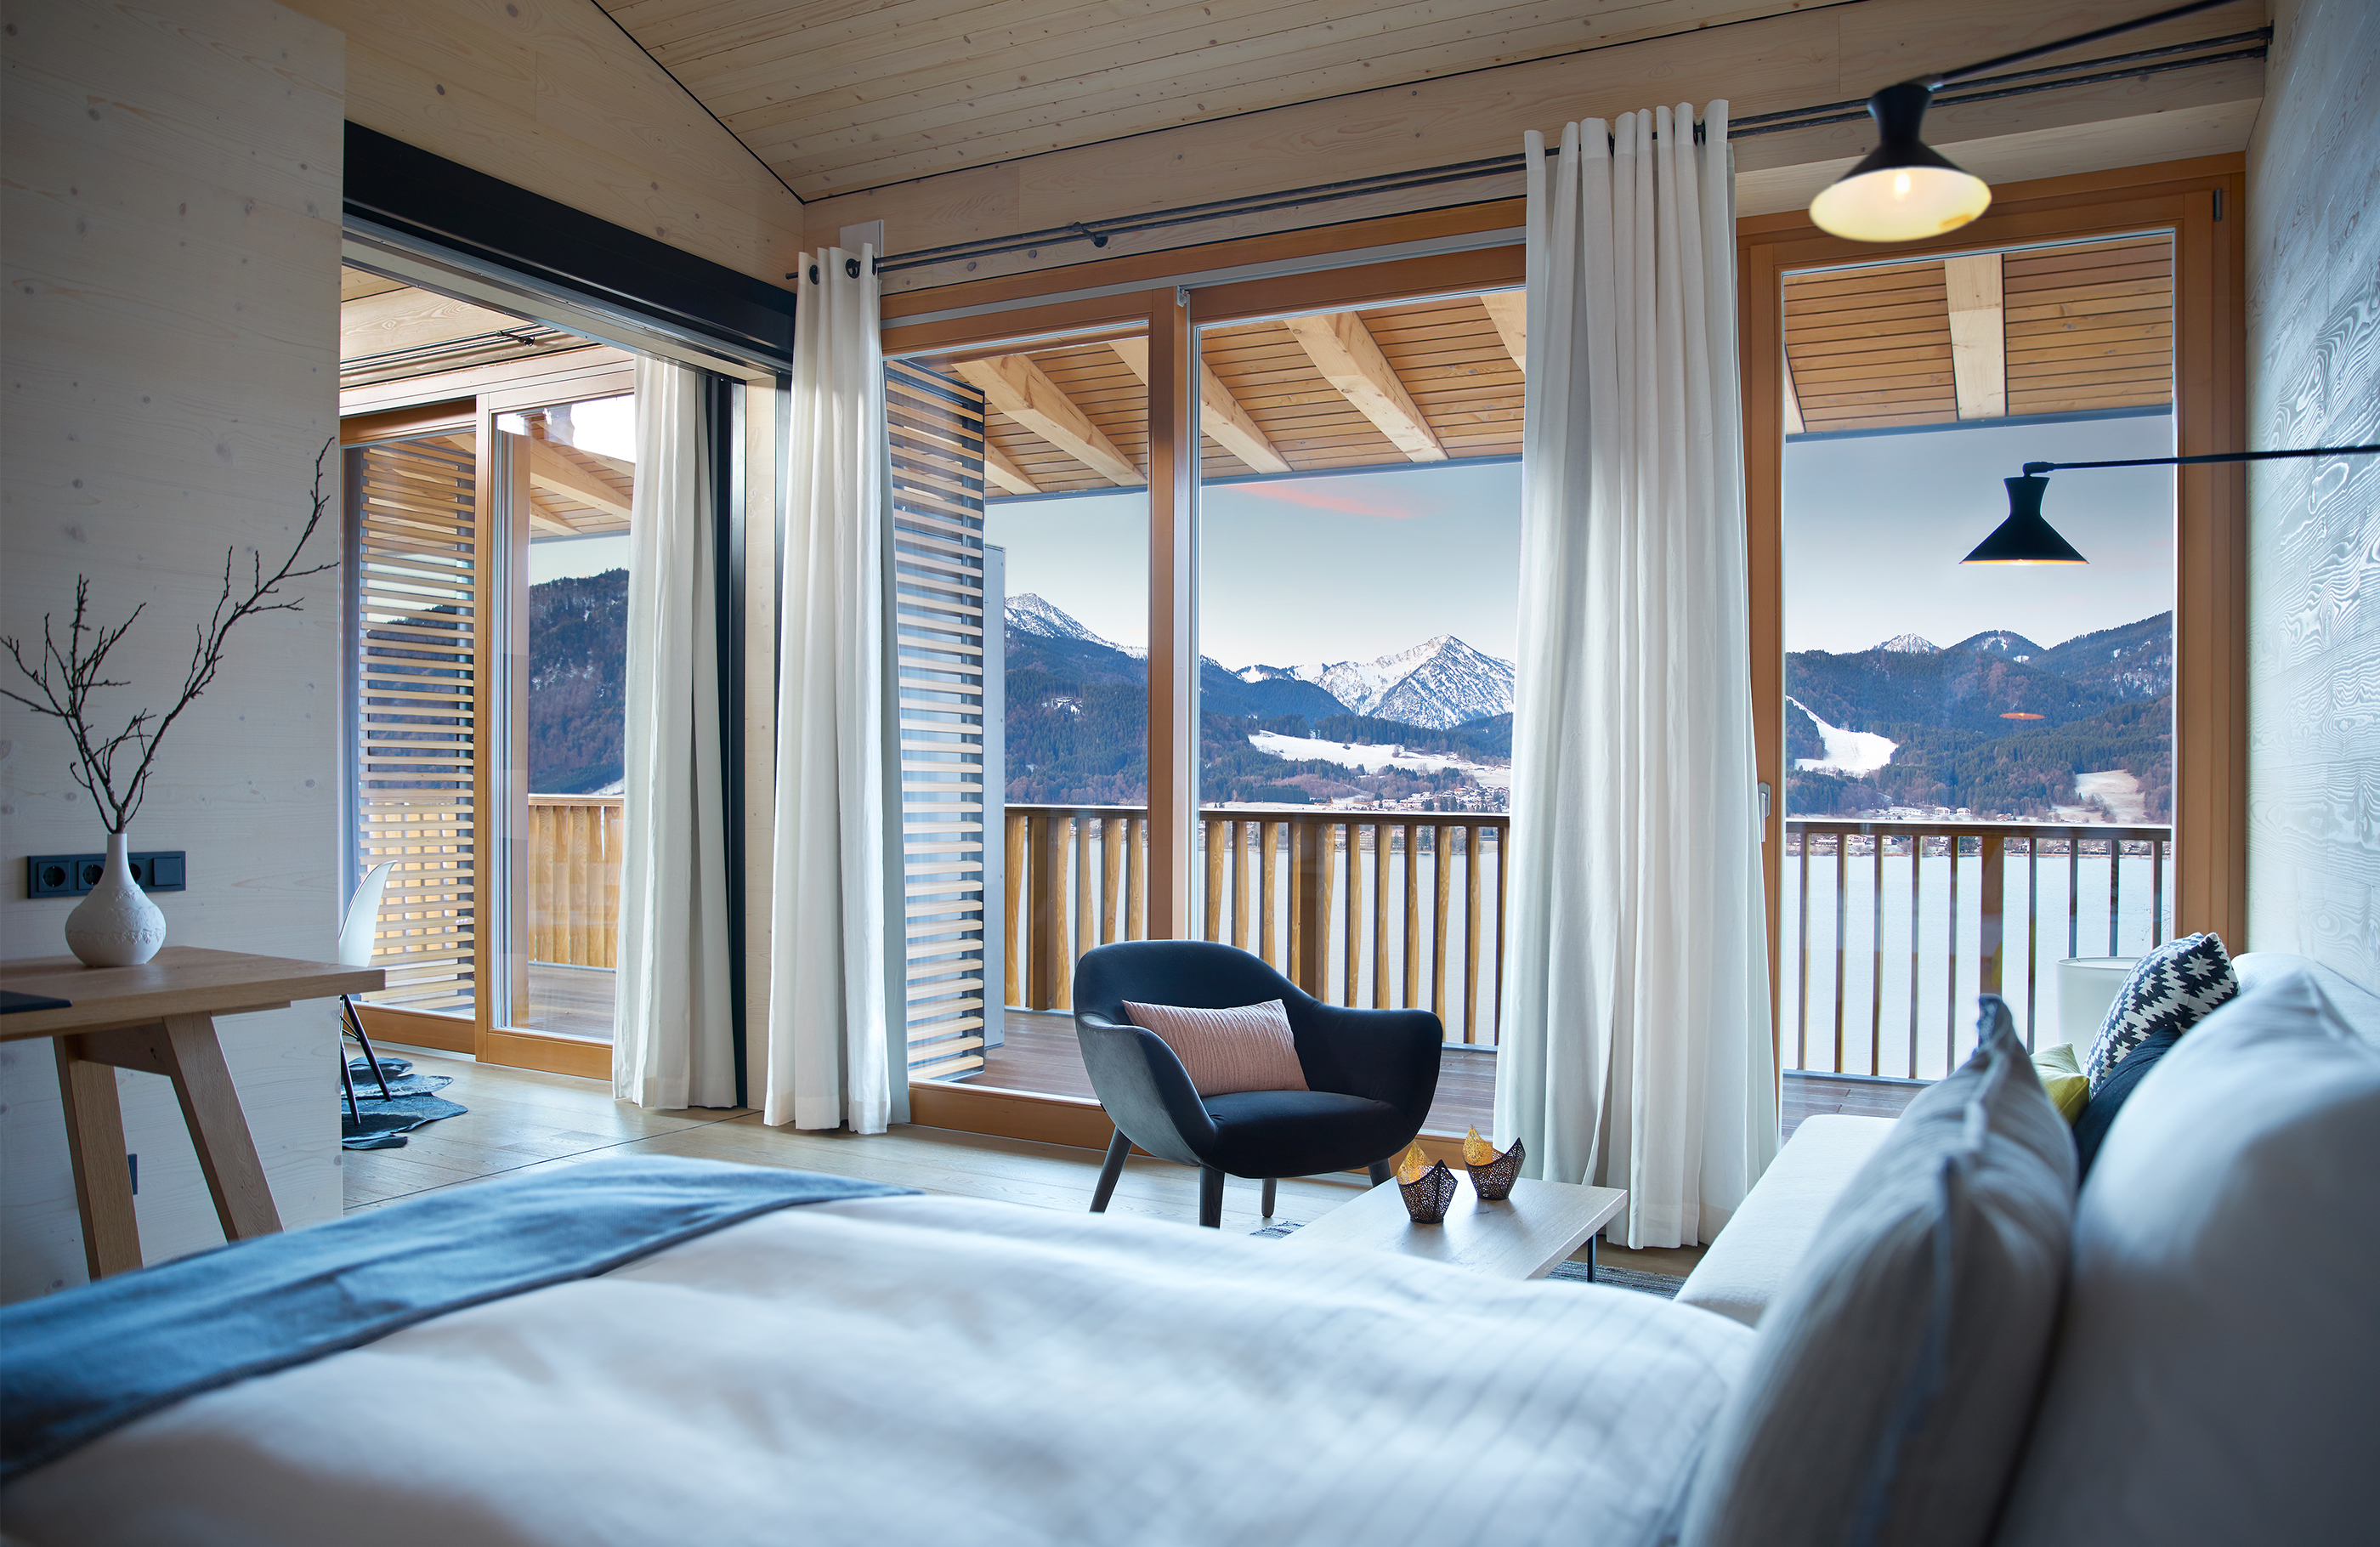 Aufnahme im Schlafzimmer des Alpenchalets mit Blick in die Berge und über den See